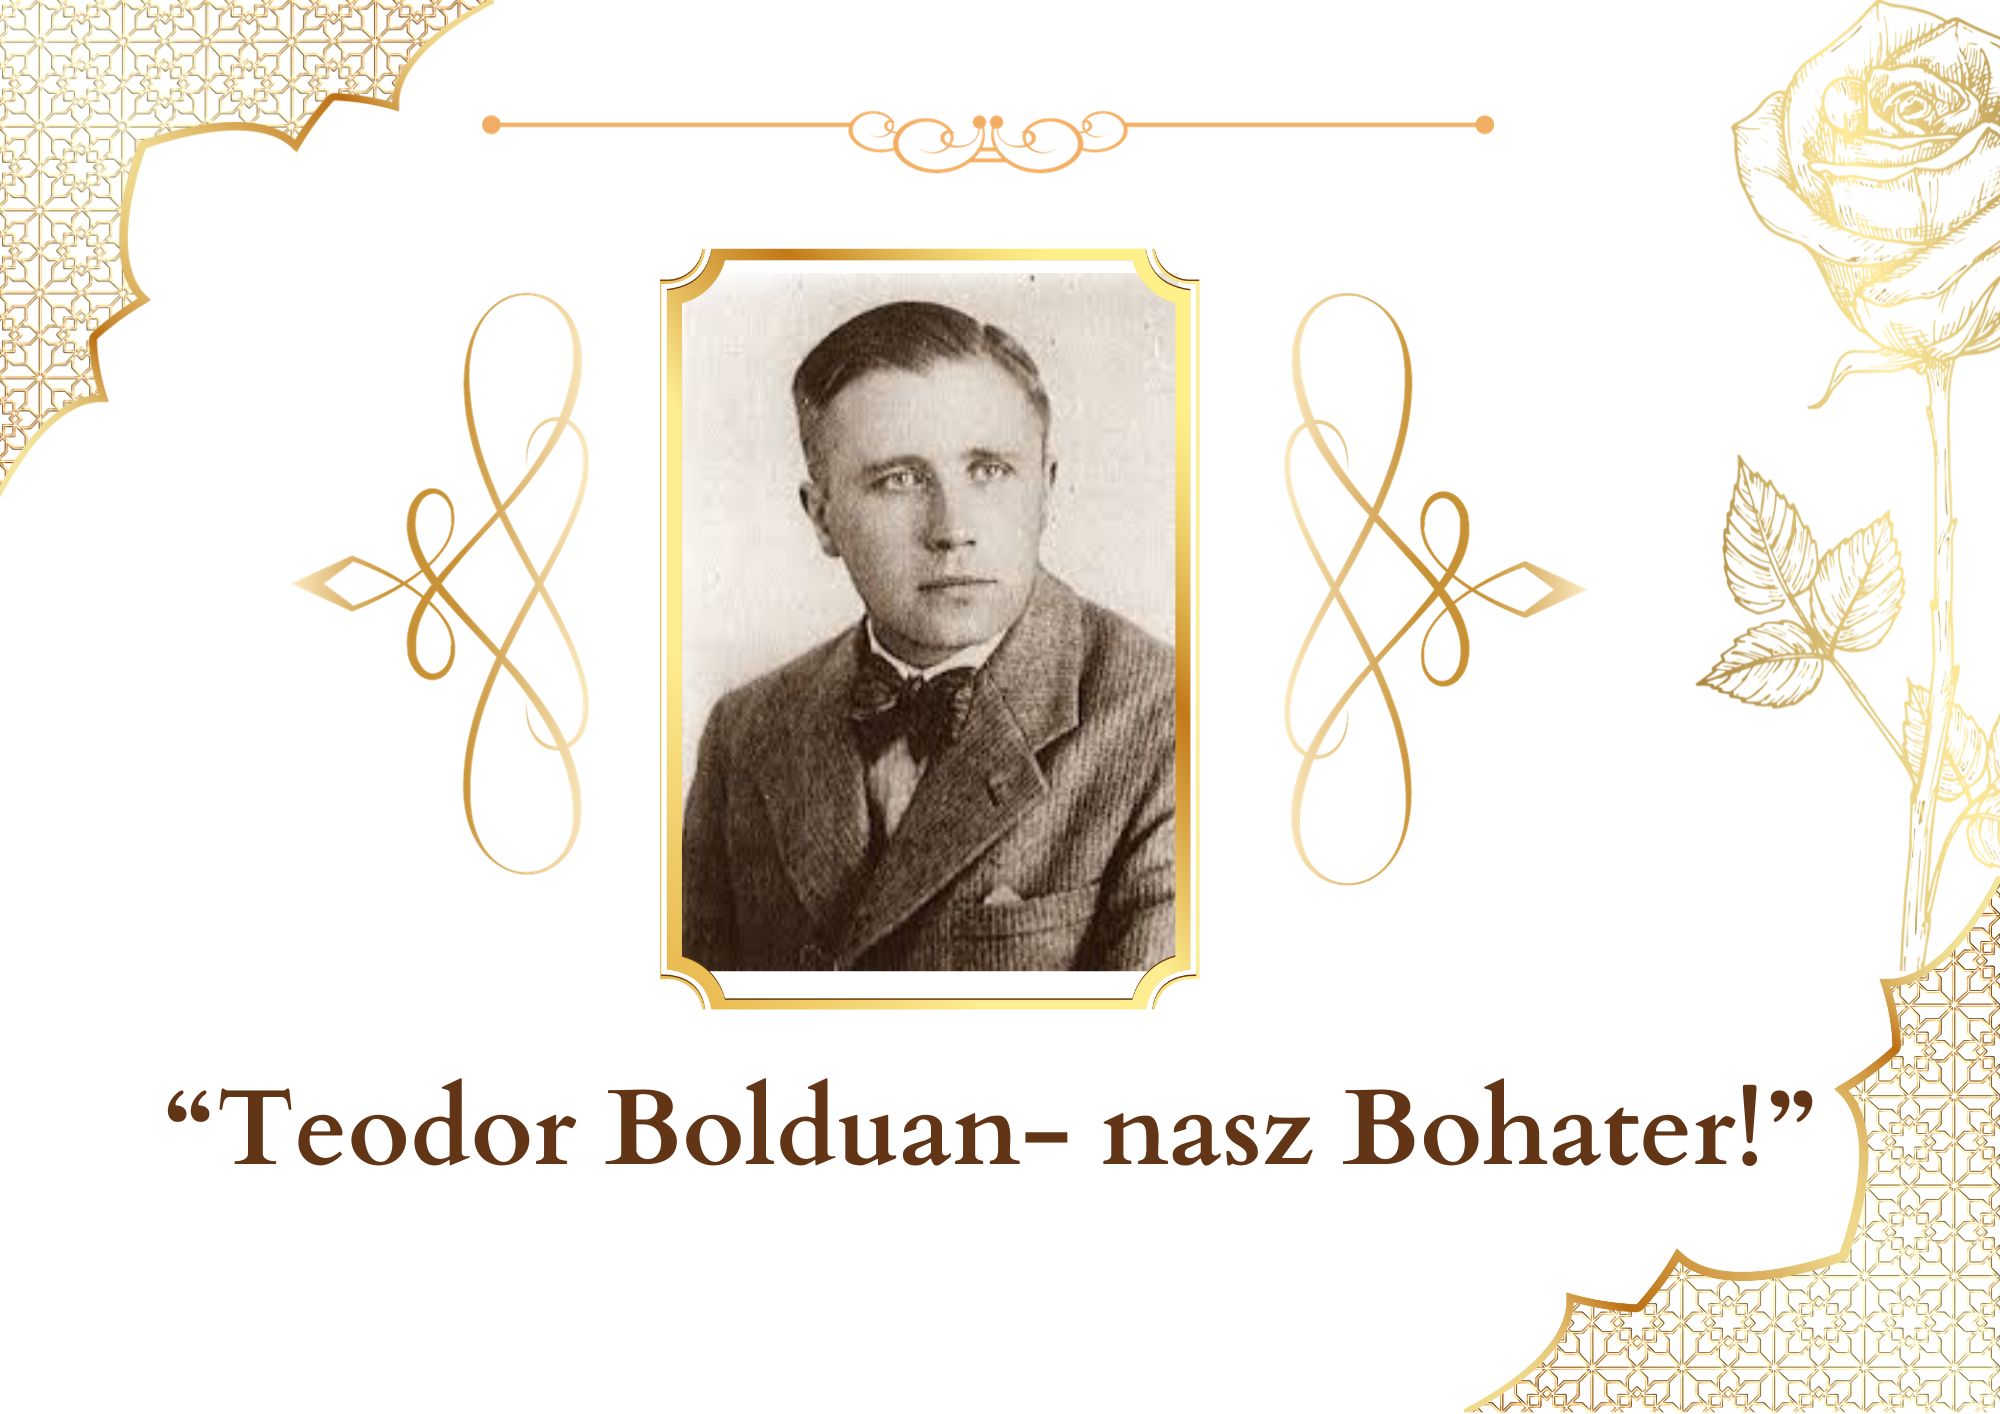 Zdjęcie patrona szkoły Teodora Bolduana w formie popiersia z zamieszczonym poniżej tytułem konkursu "Teodor Bolduan- nasz Bohater!" 